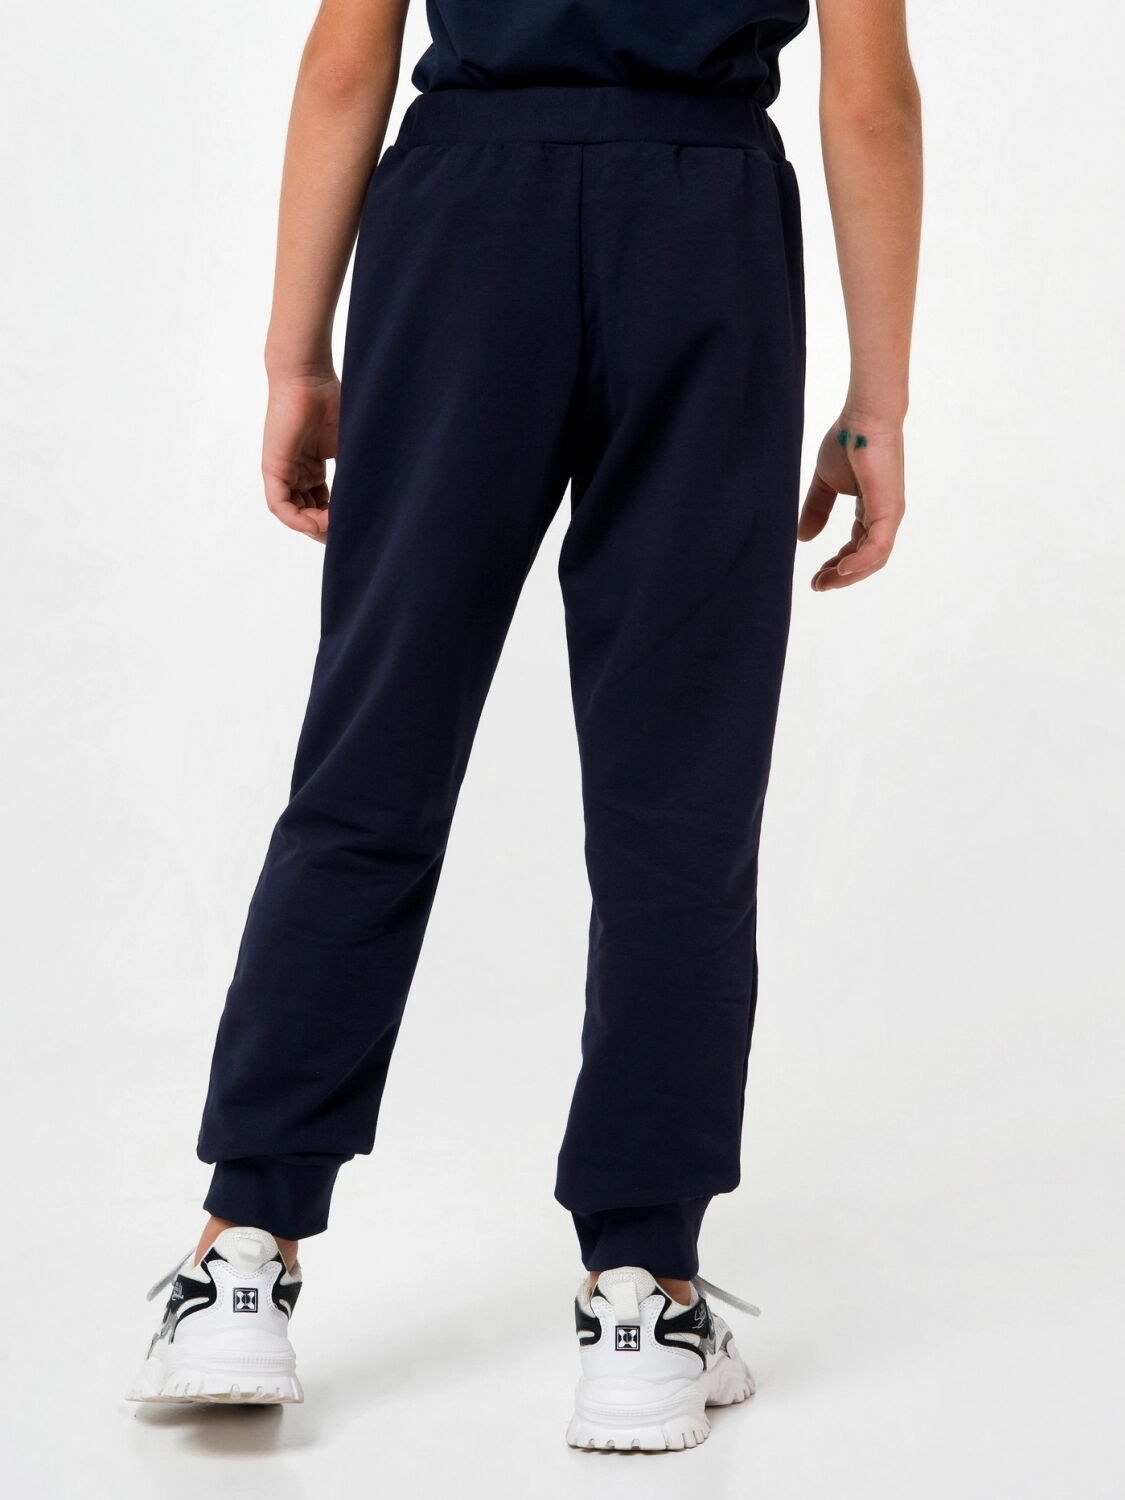 Спортивные штаны для мальчика SMIL темно-синие 115440/115459/115490 - фото